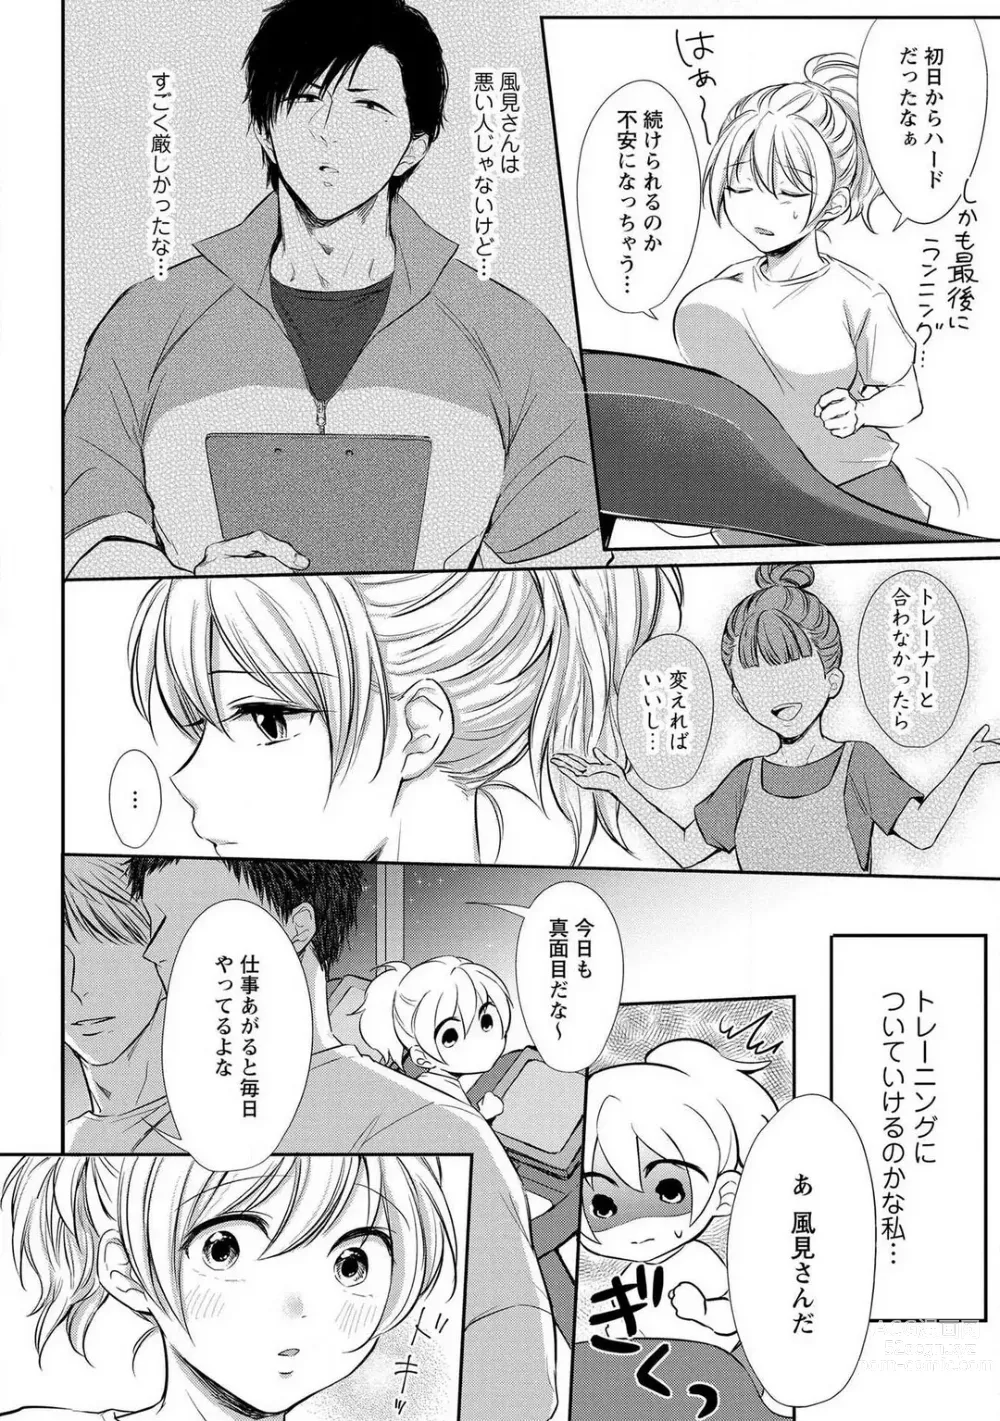 Page 11 of manga Pyuuru